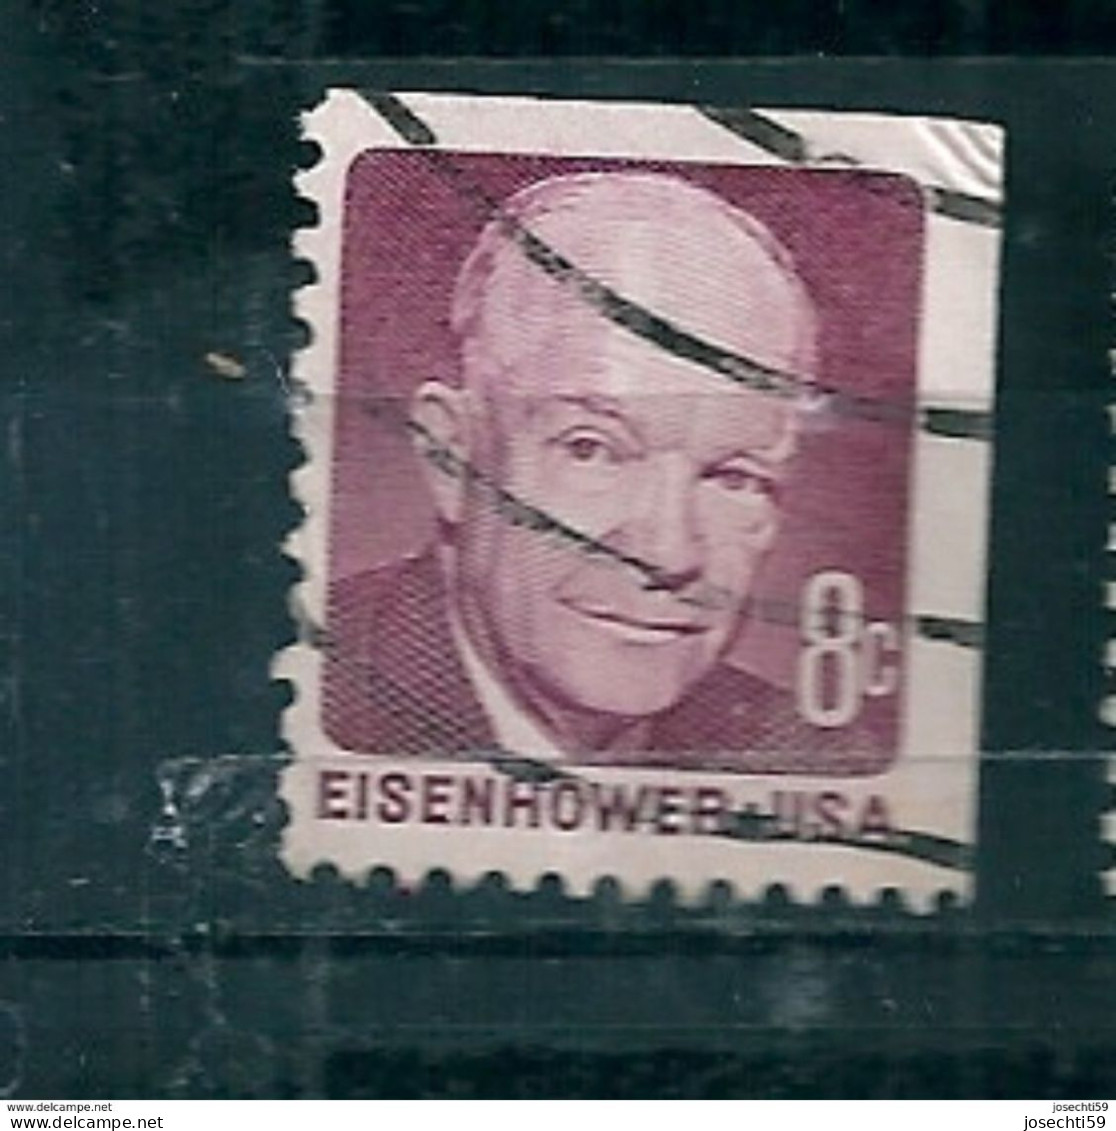 N°922 Dwight D. Eisenhower 8 Ct  USA Oblitéré 1971 Stamp Etats Unis D'Amérique Timbre USA - Usati